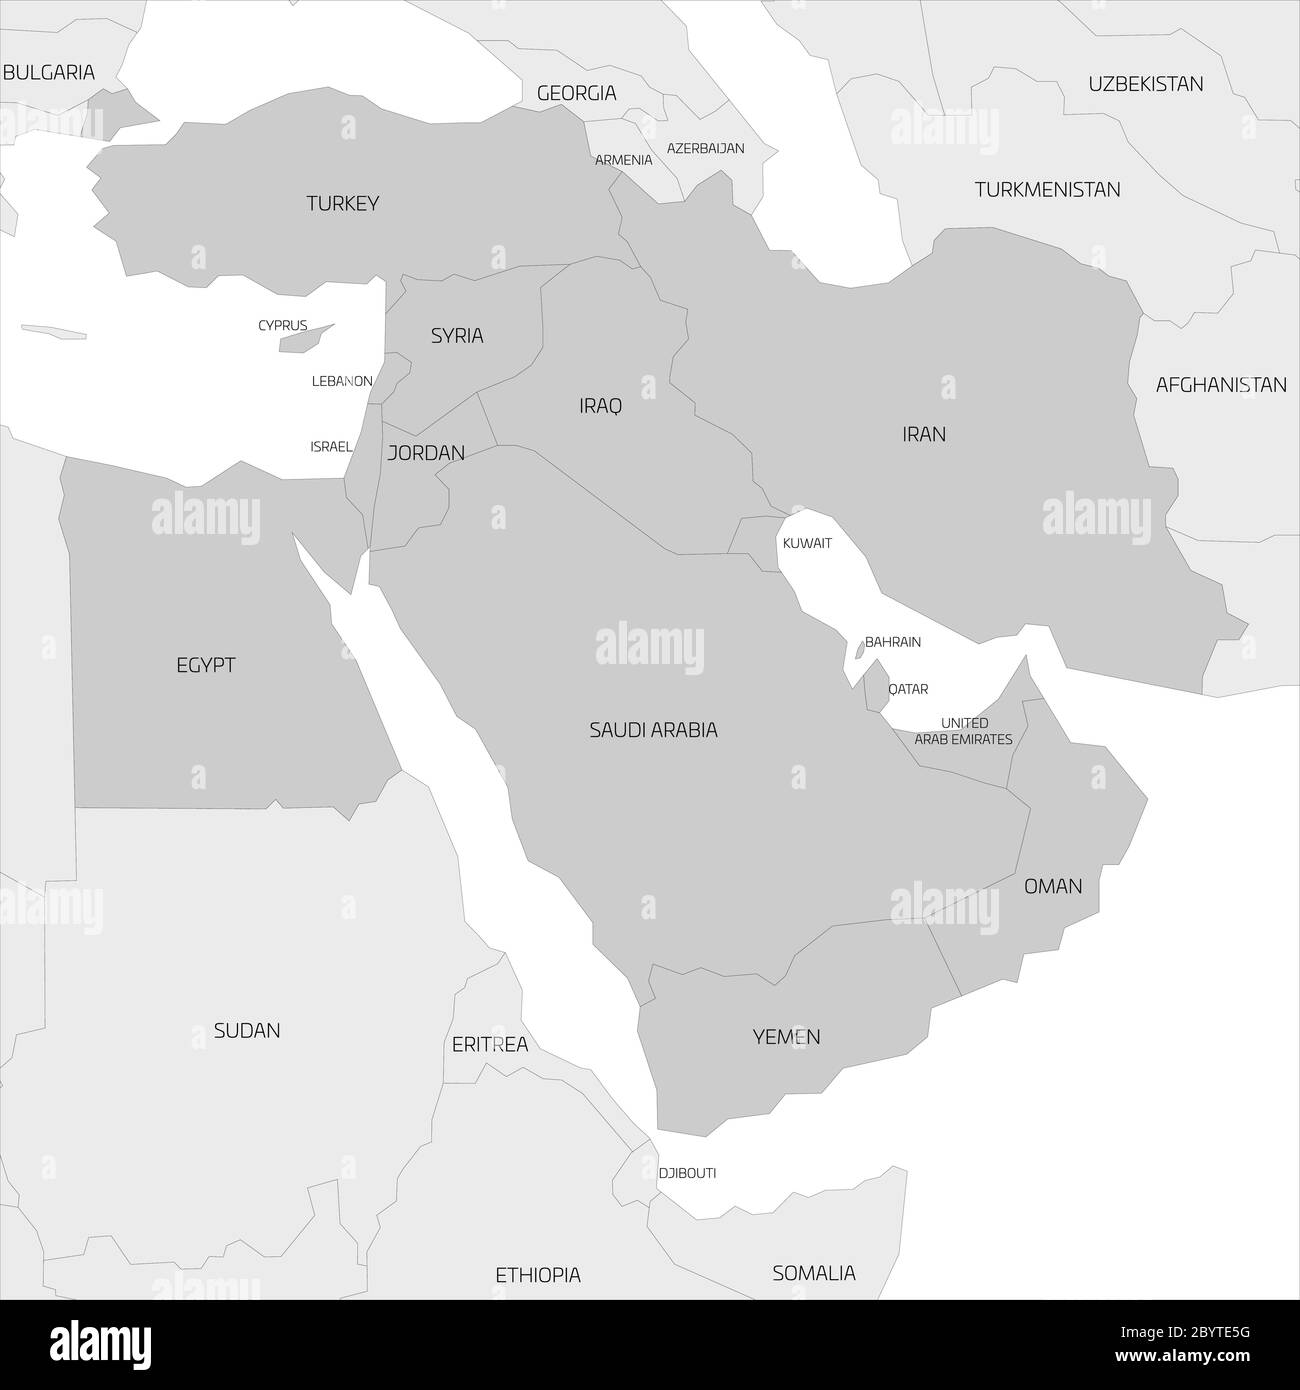 Mappa della regione transcontinentale del Medio Oriente o del Vicino Oriente con i paesi dell'Asia occidentale, Turchia, Cipro ed Egitto evidenziati. Mappa grigia piatta con confini neri sottili. Illustrazione Vettoriale